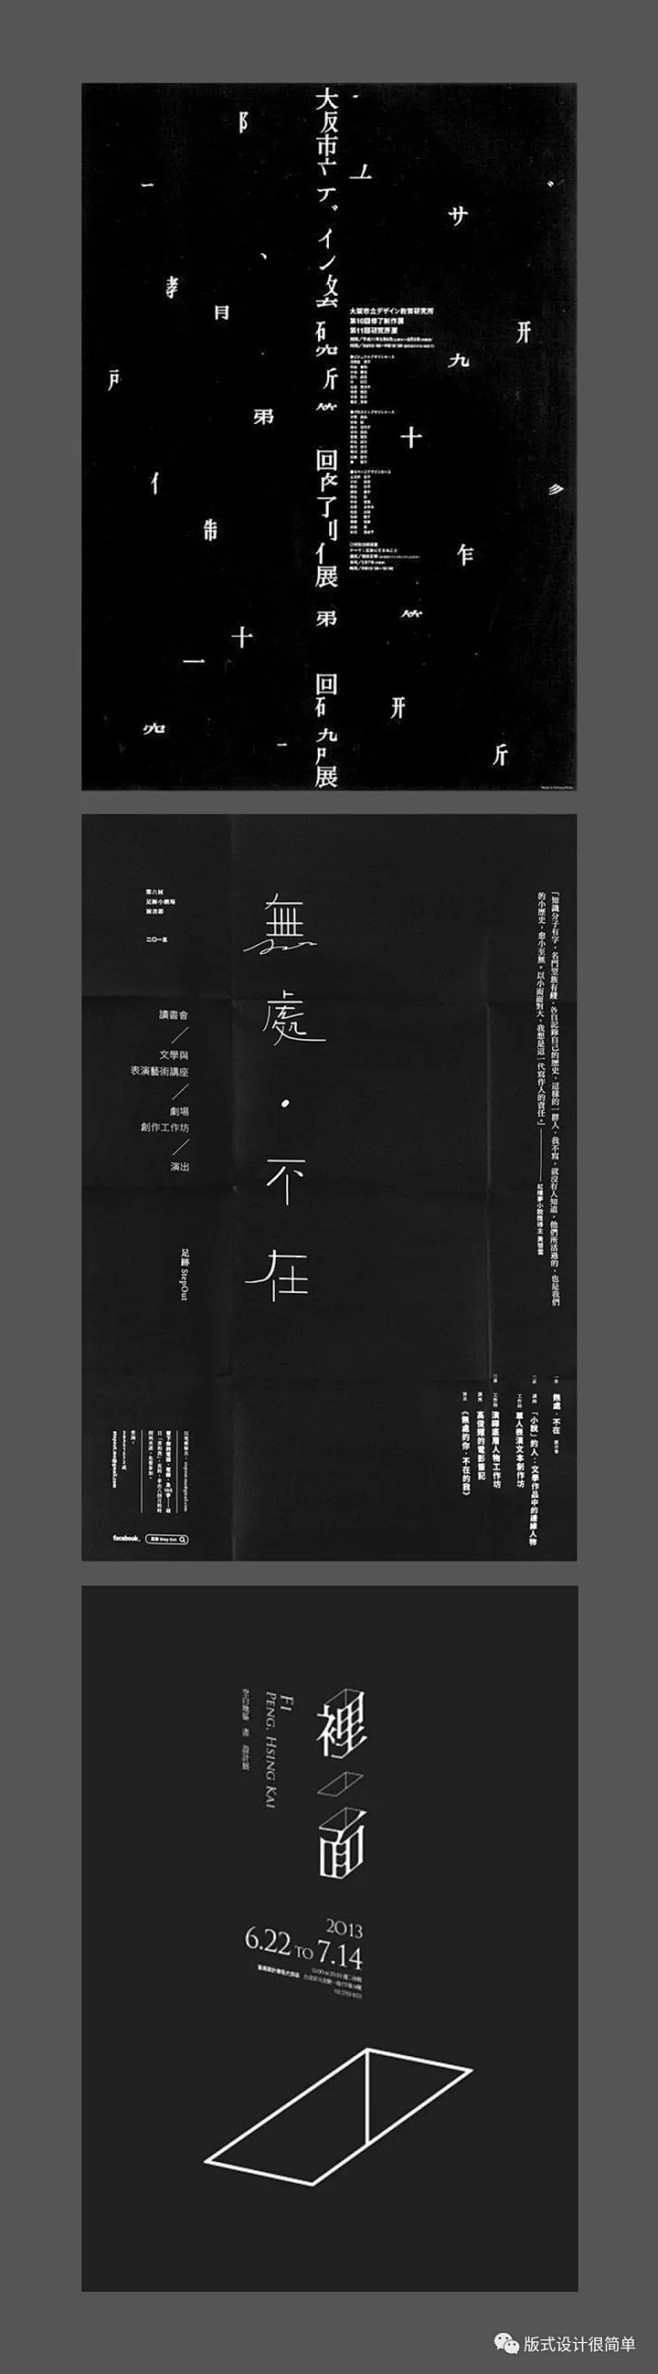 |海报设计|—黑白主题的中文海报